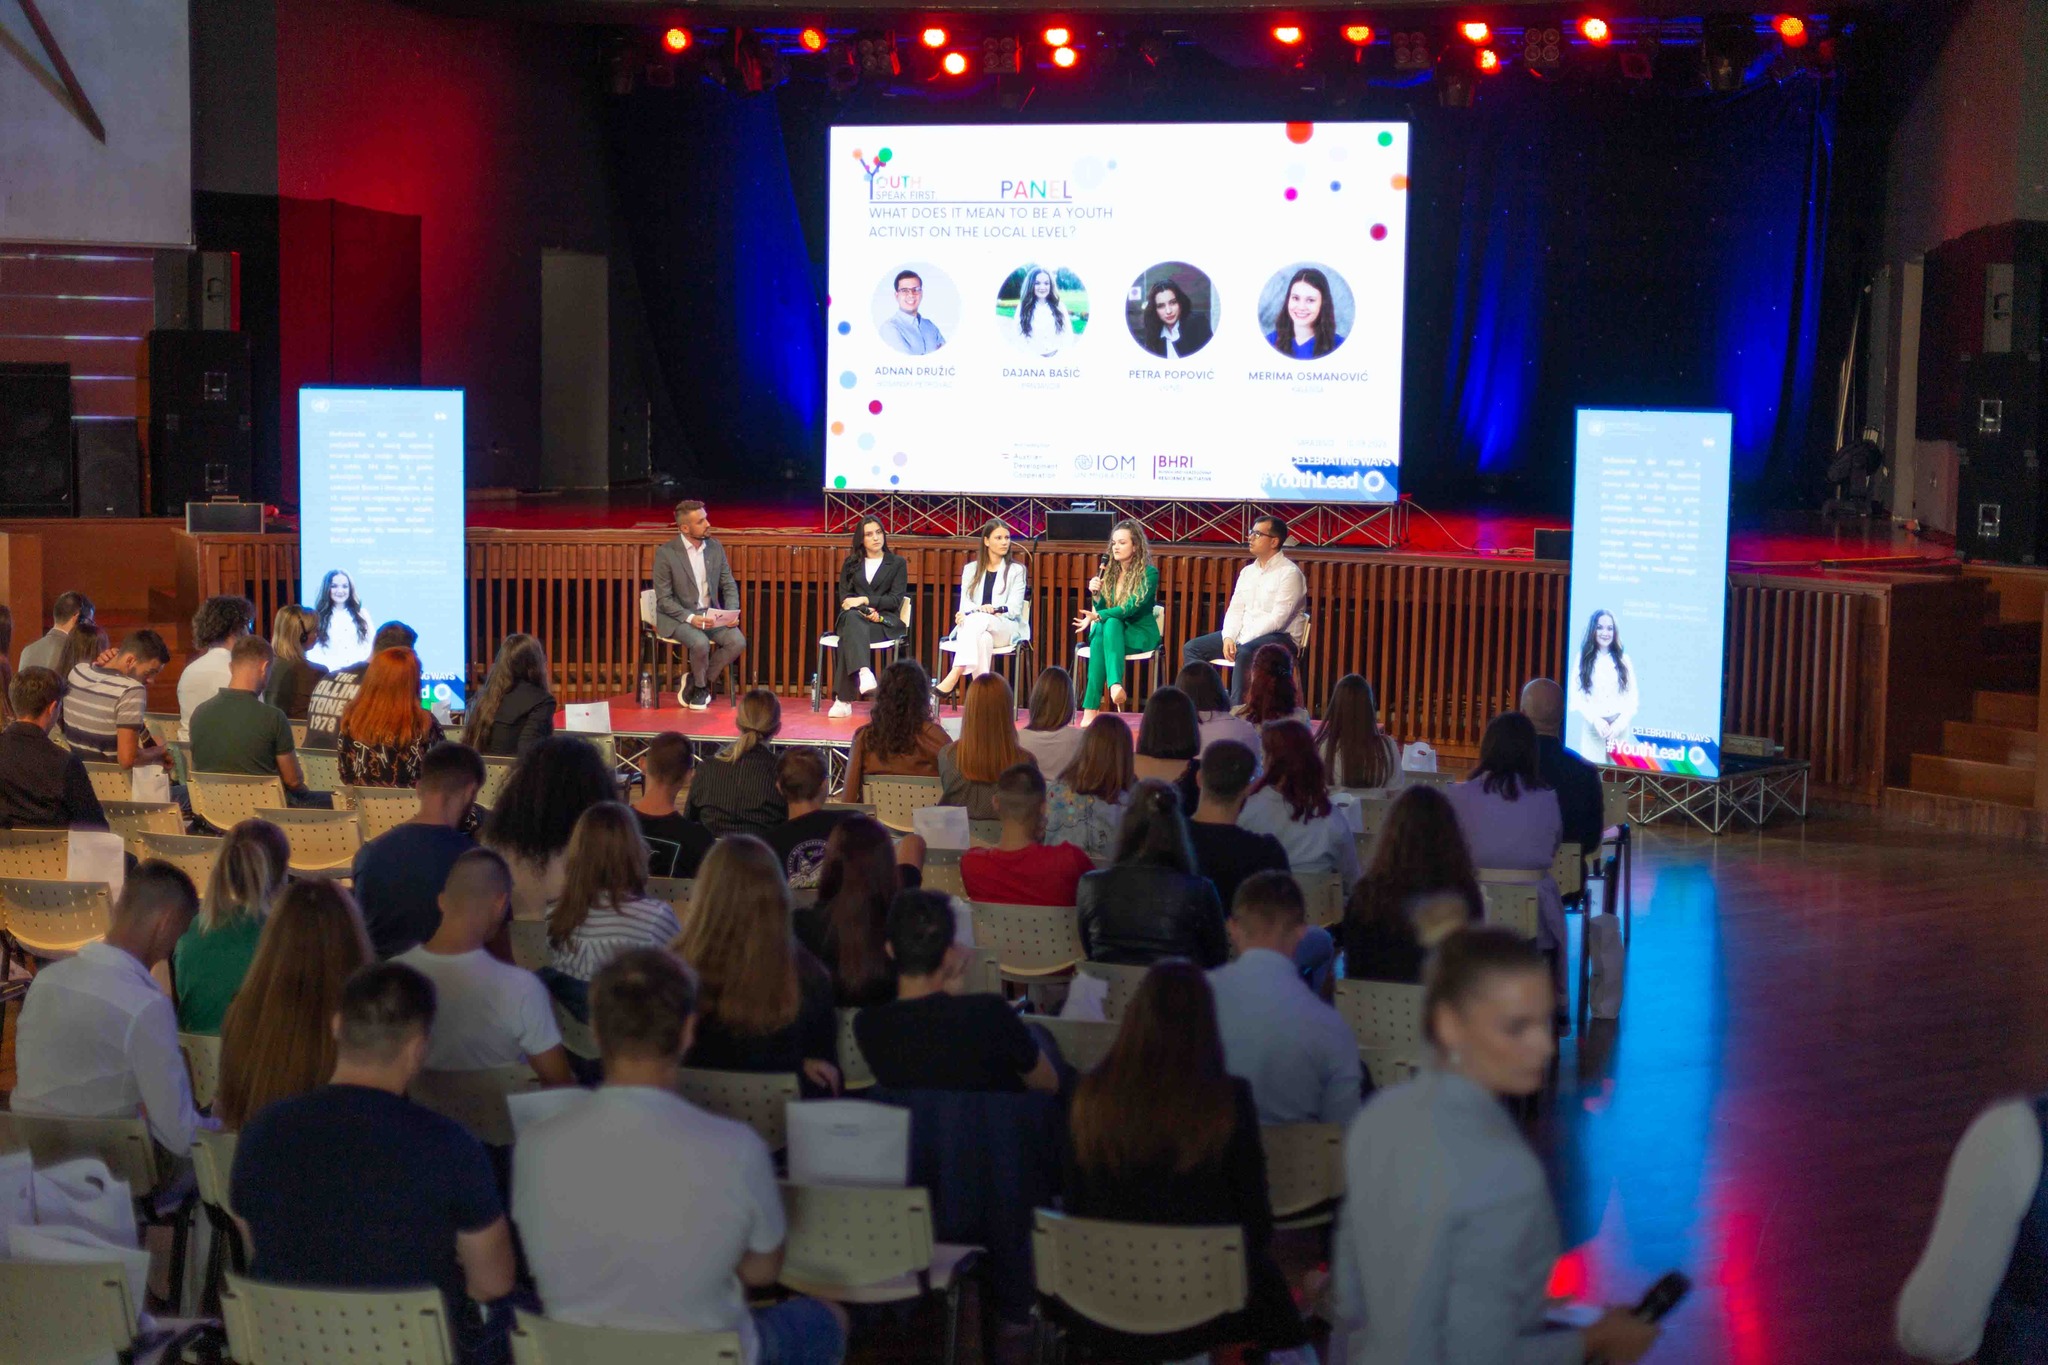 Inspirativno iskustvo na događaju “Youth Speak First” u Sarajevu: Povezivanje za bolju budućnost mladih